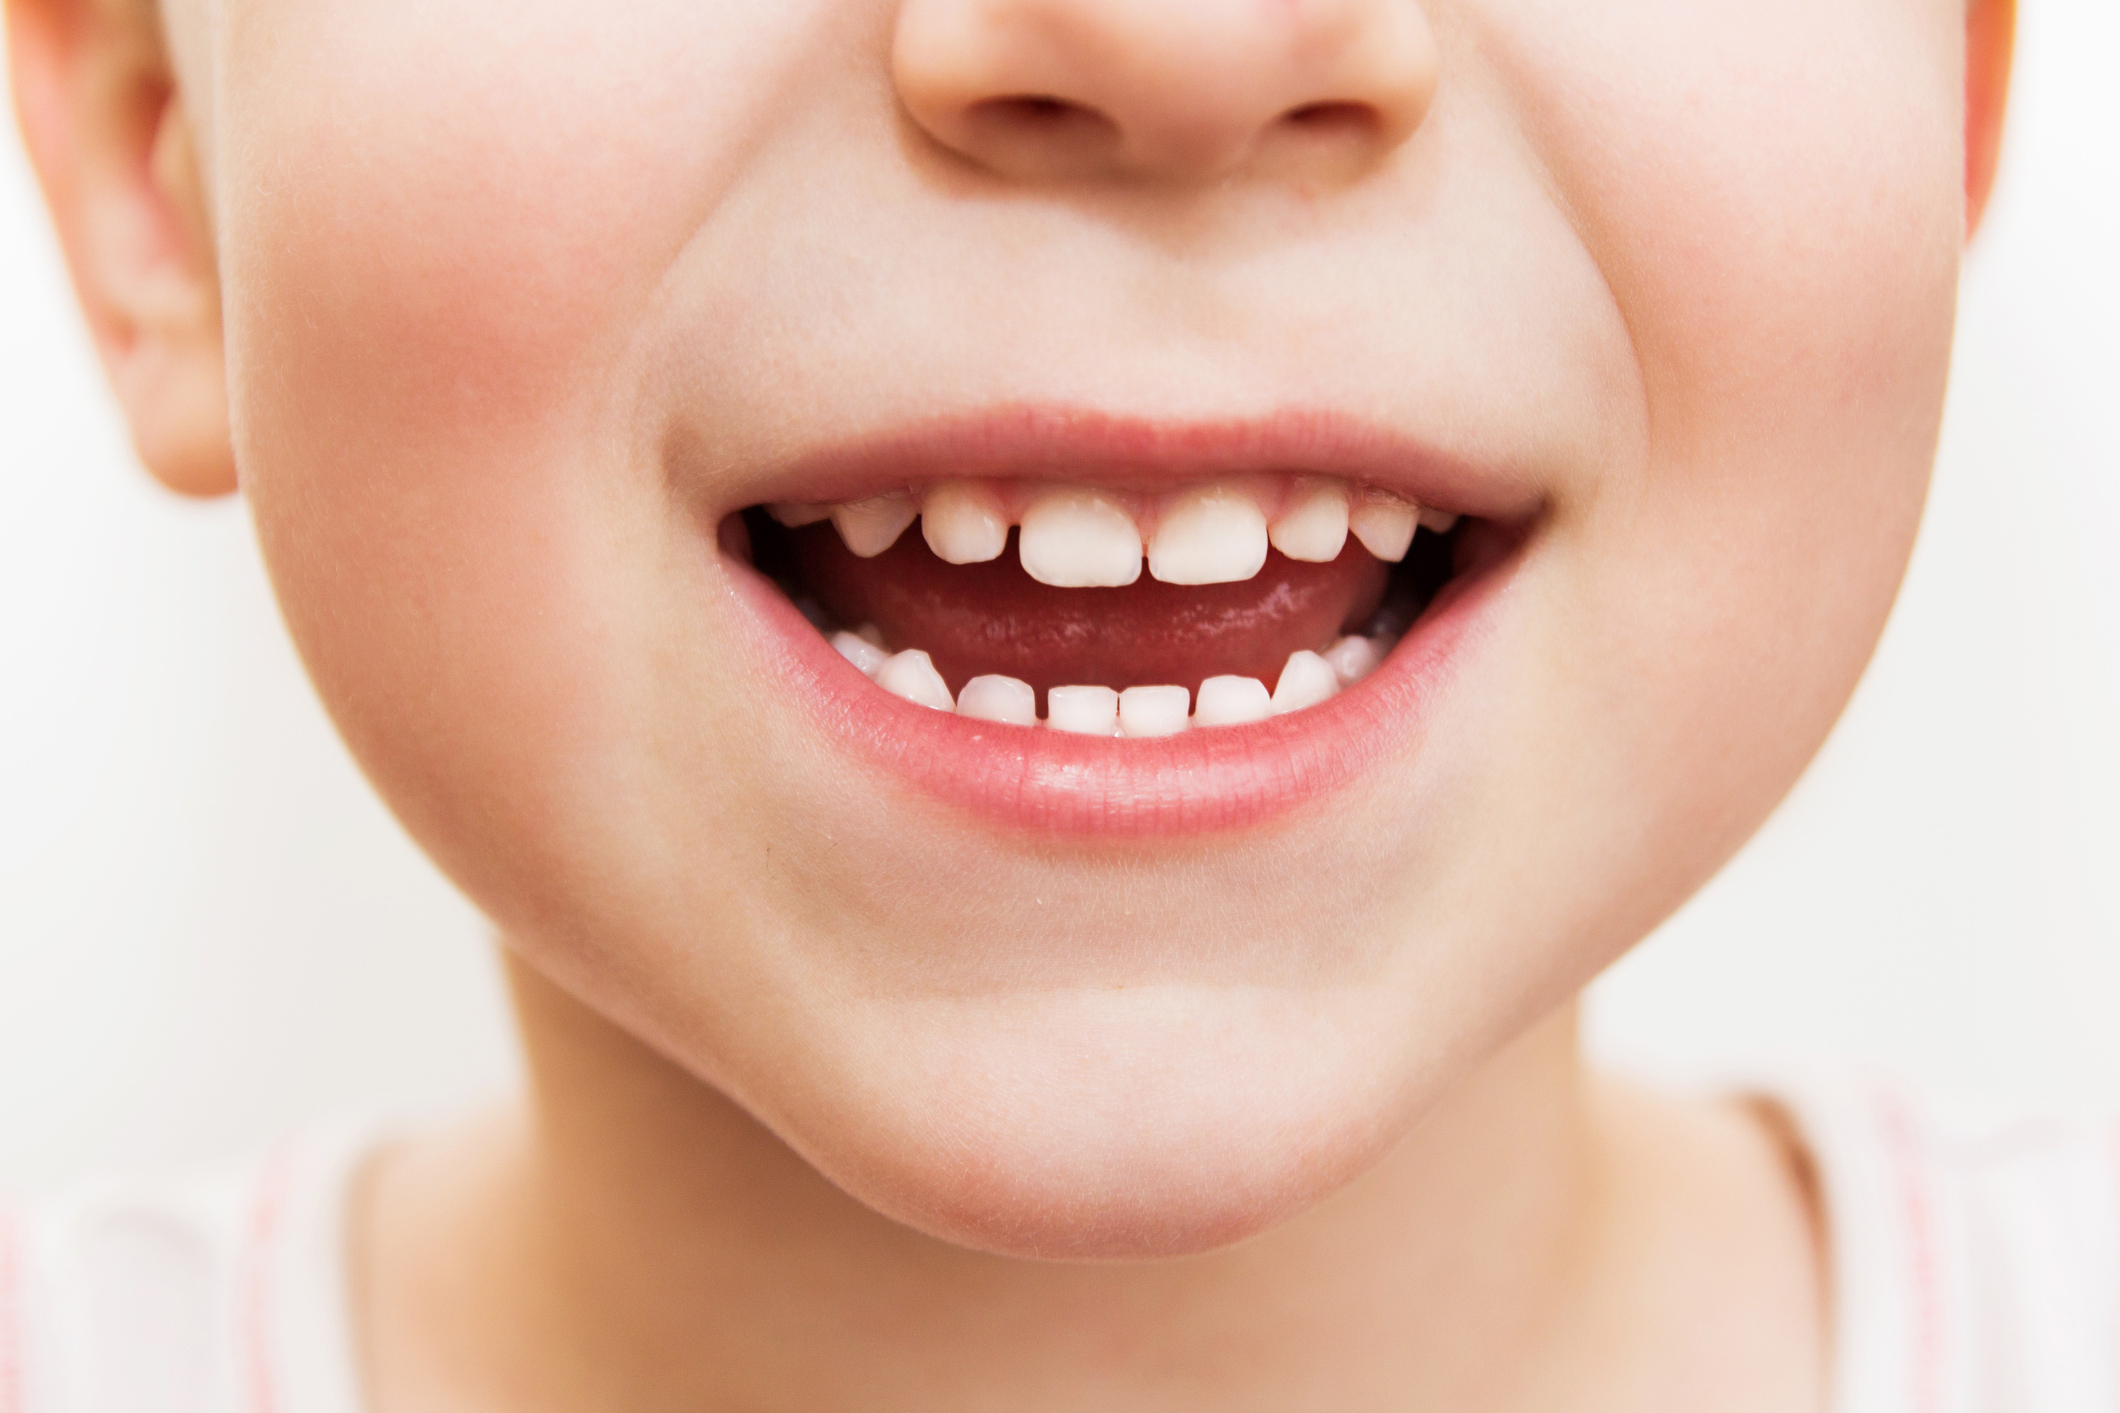 Děti do 6 let jsou nejvíce ohroženy spolknutím zubní pasty při čištění zubů